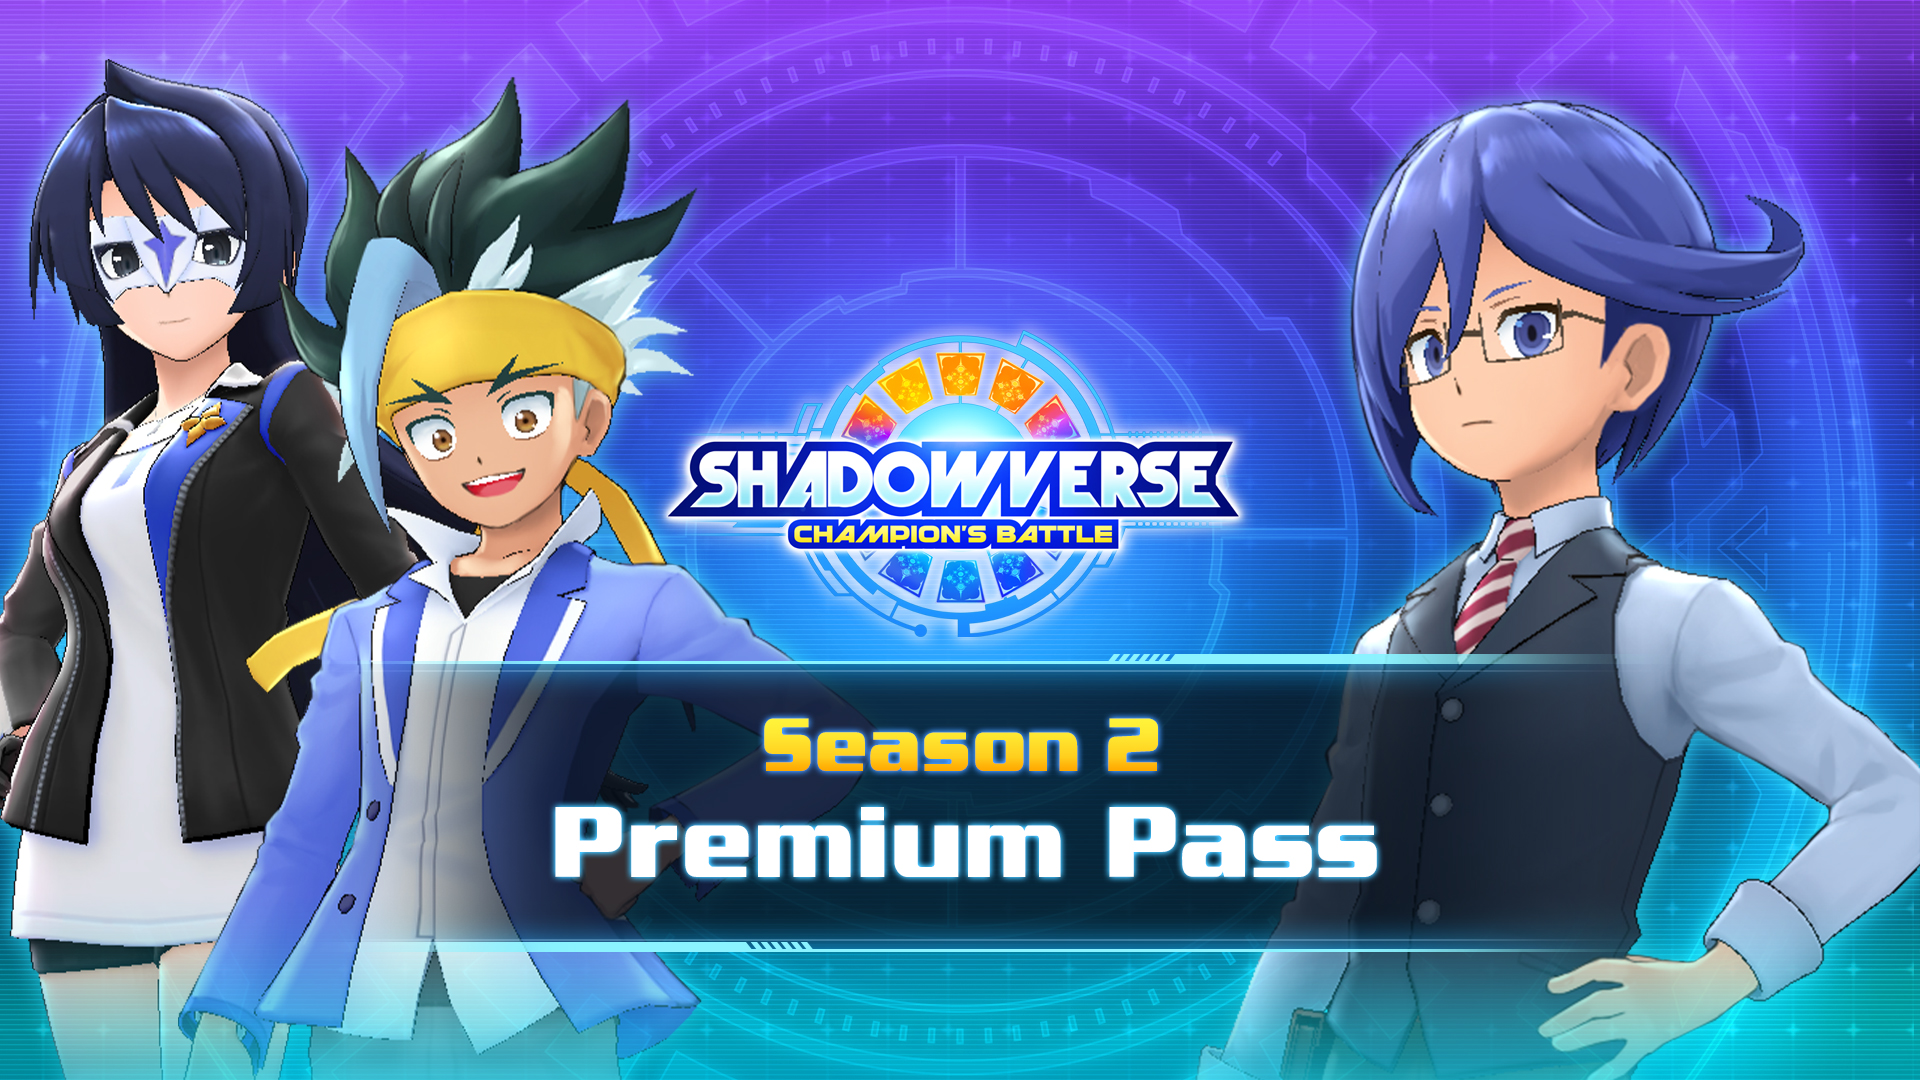 Season 2 Premium Pass